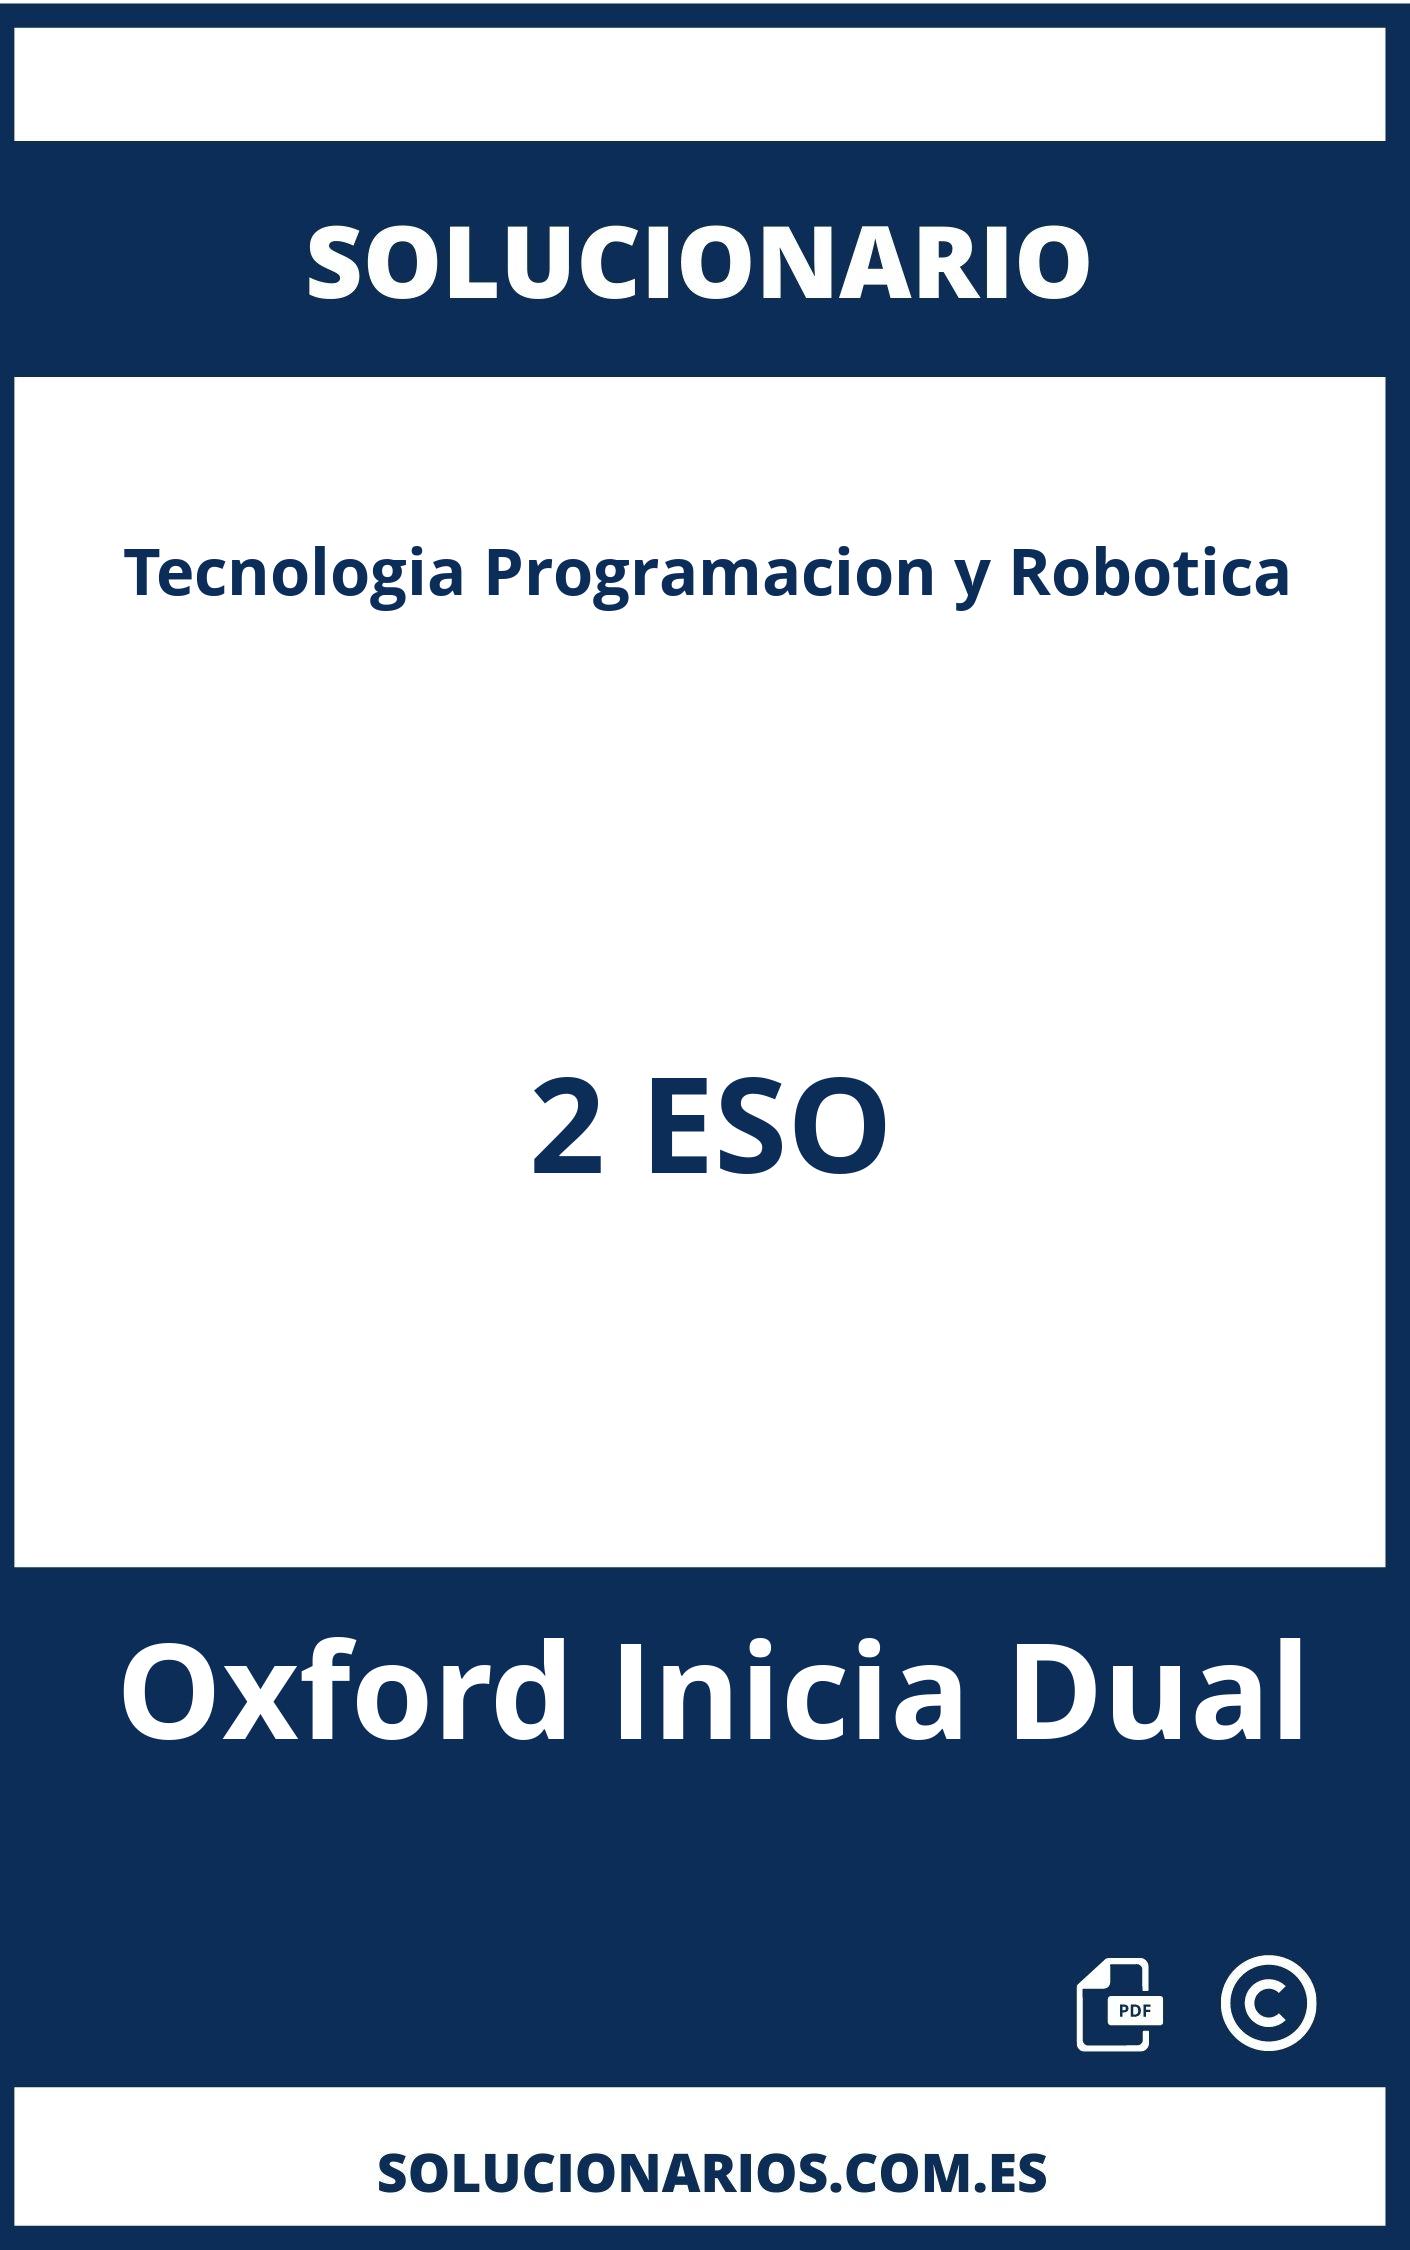 Solucionario Tecnologia Programacion y Robotica 2 ESO Oxford Inicia Dual